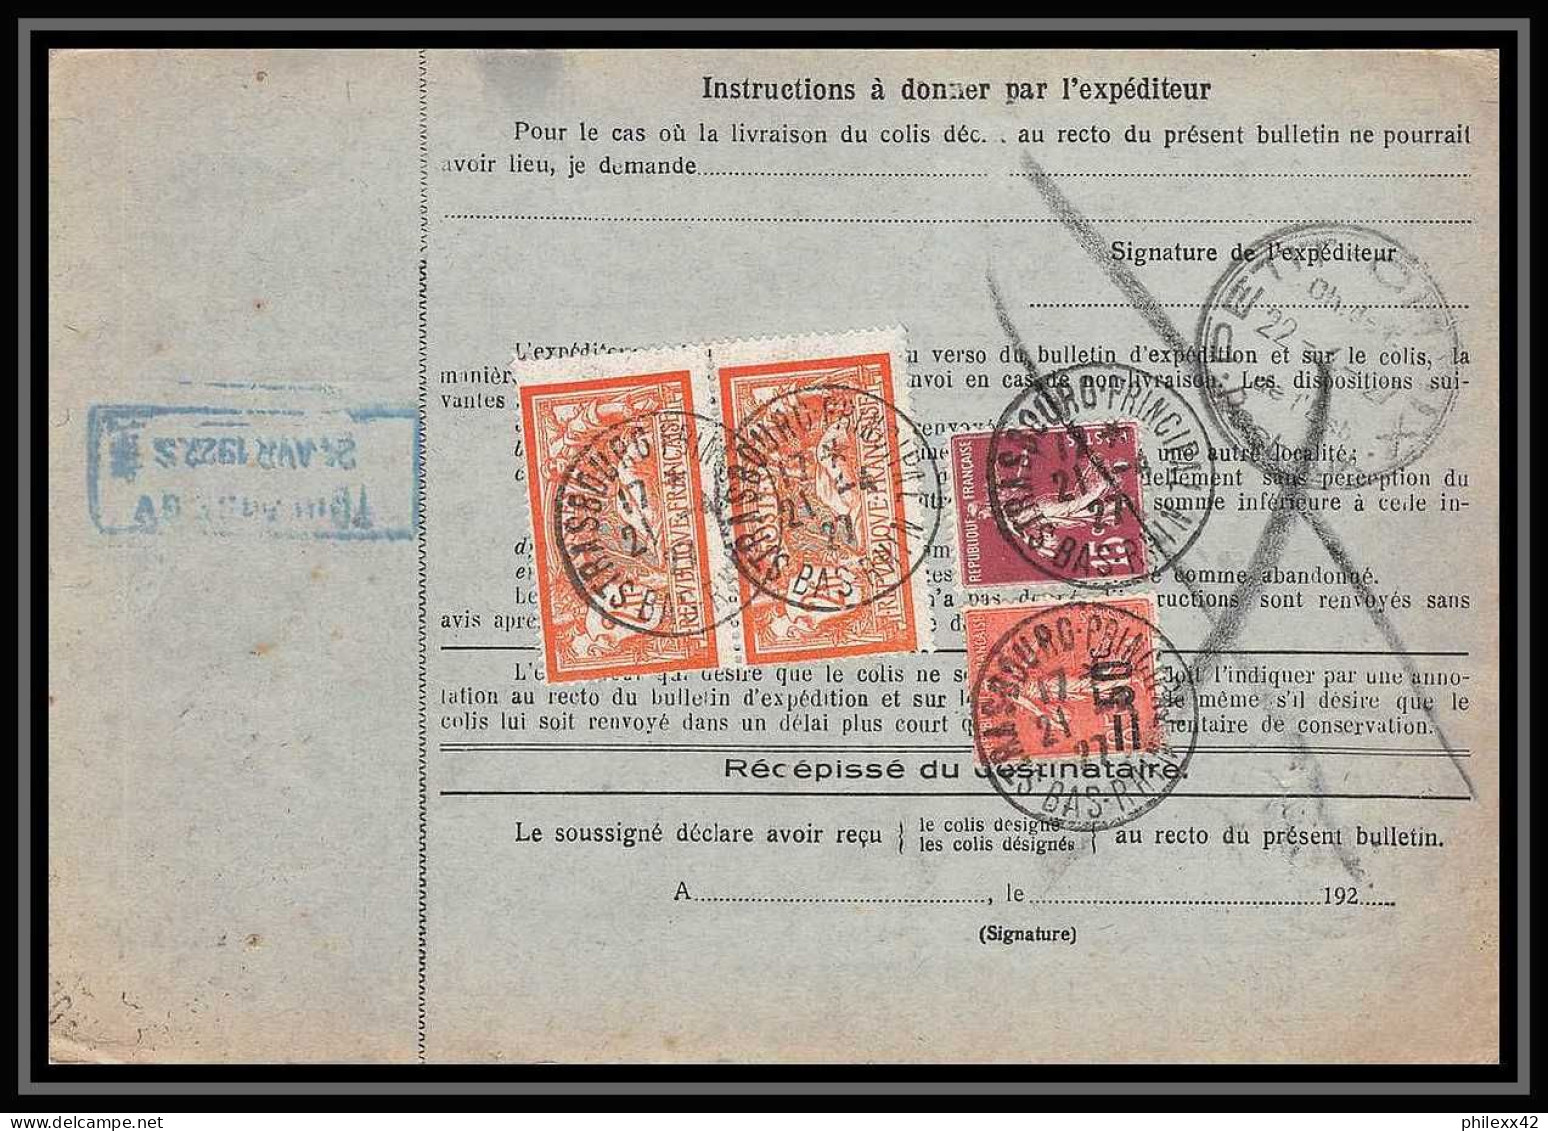 25007 Bulletin D'expédition France Colis Postaux Fiscal Haut Rhin 1927 Strasbourg Semeuse Merson 145 EN GARE - Lettres & Documents